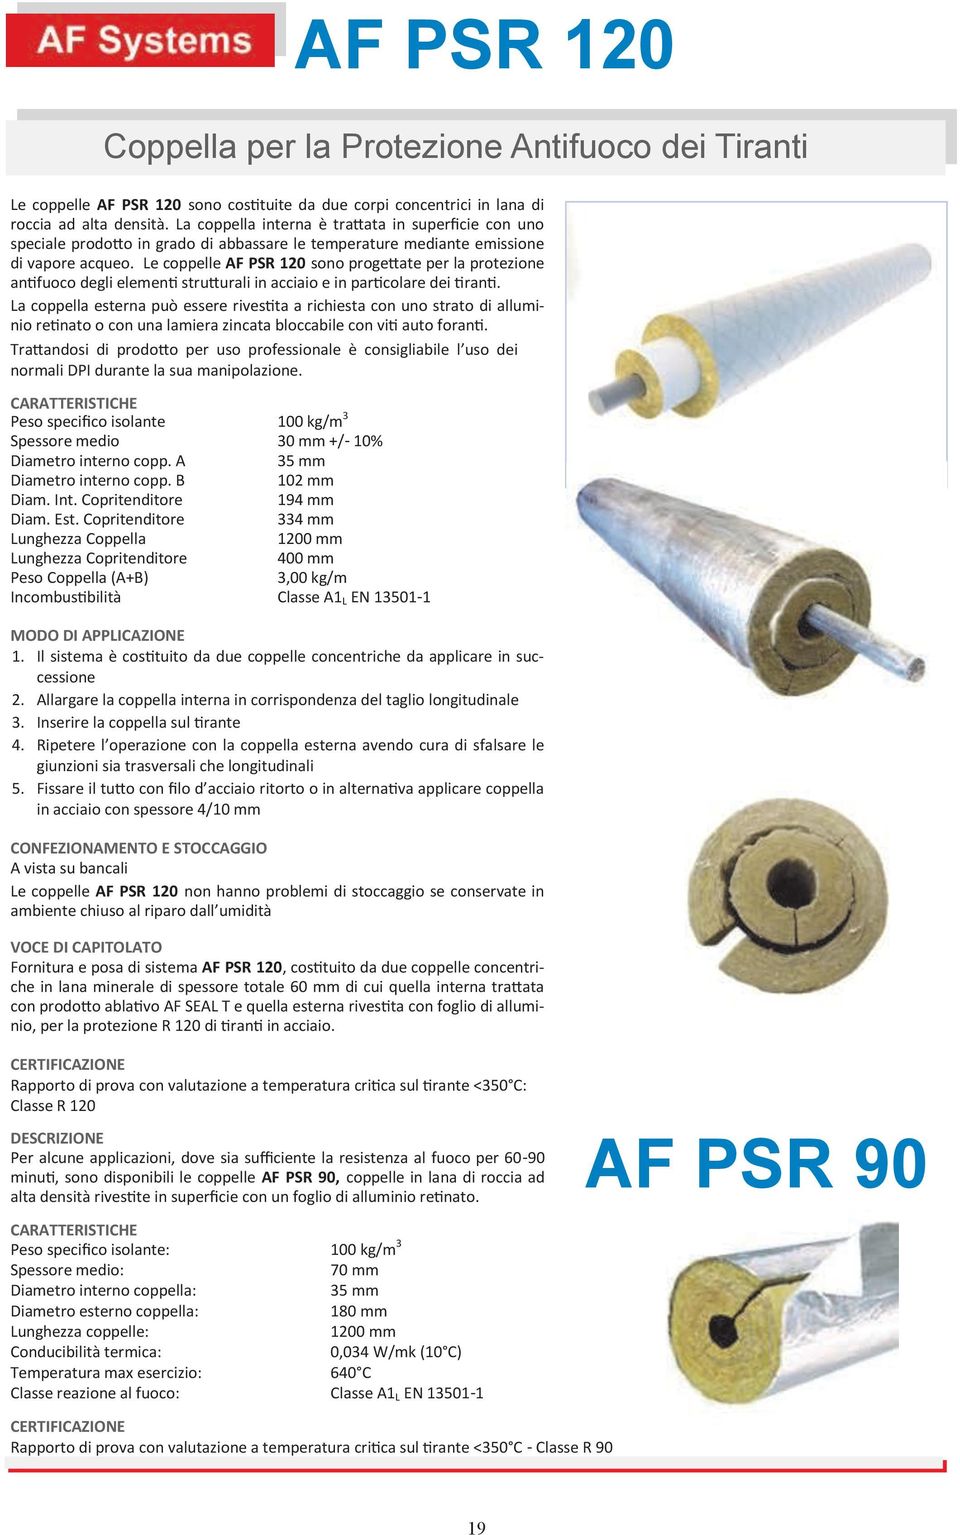 Le coppelle AF PSR 120 sono progettate per la protezione antifuoco degli elementi strutturali in acciaio e in particolare dei tiranti.